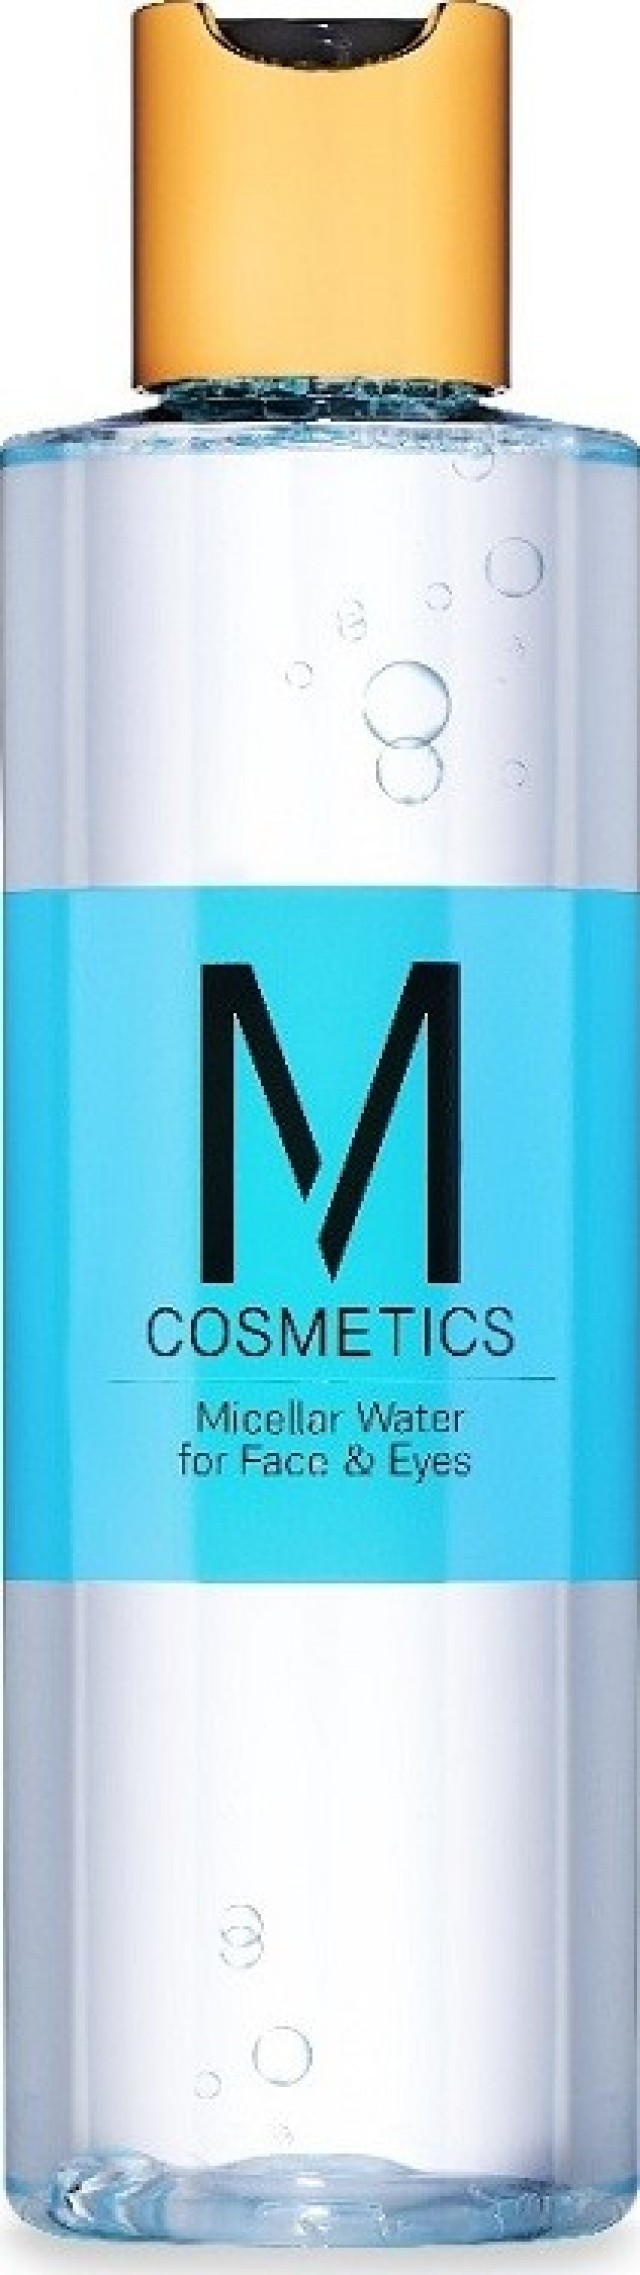 M Cosmetics Micellar Water for Face & Eyes Νερό Καθαρισμού & Ντεμακιγιάζ Προσώπου & Ματιών 200ml